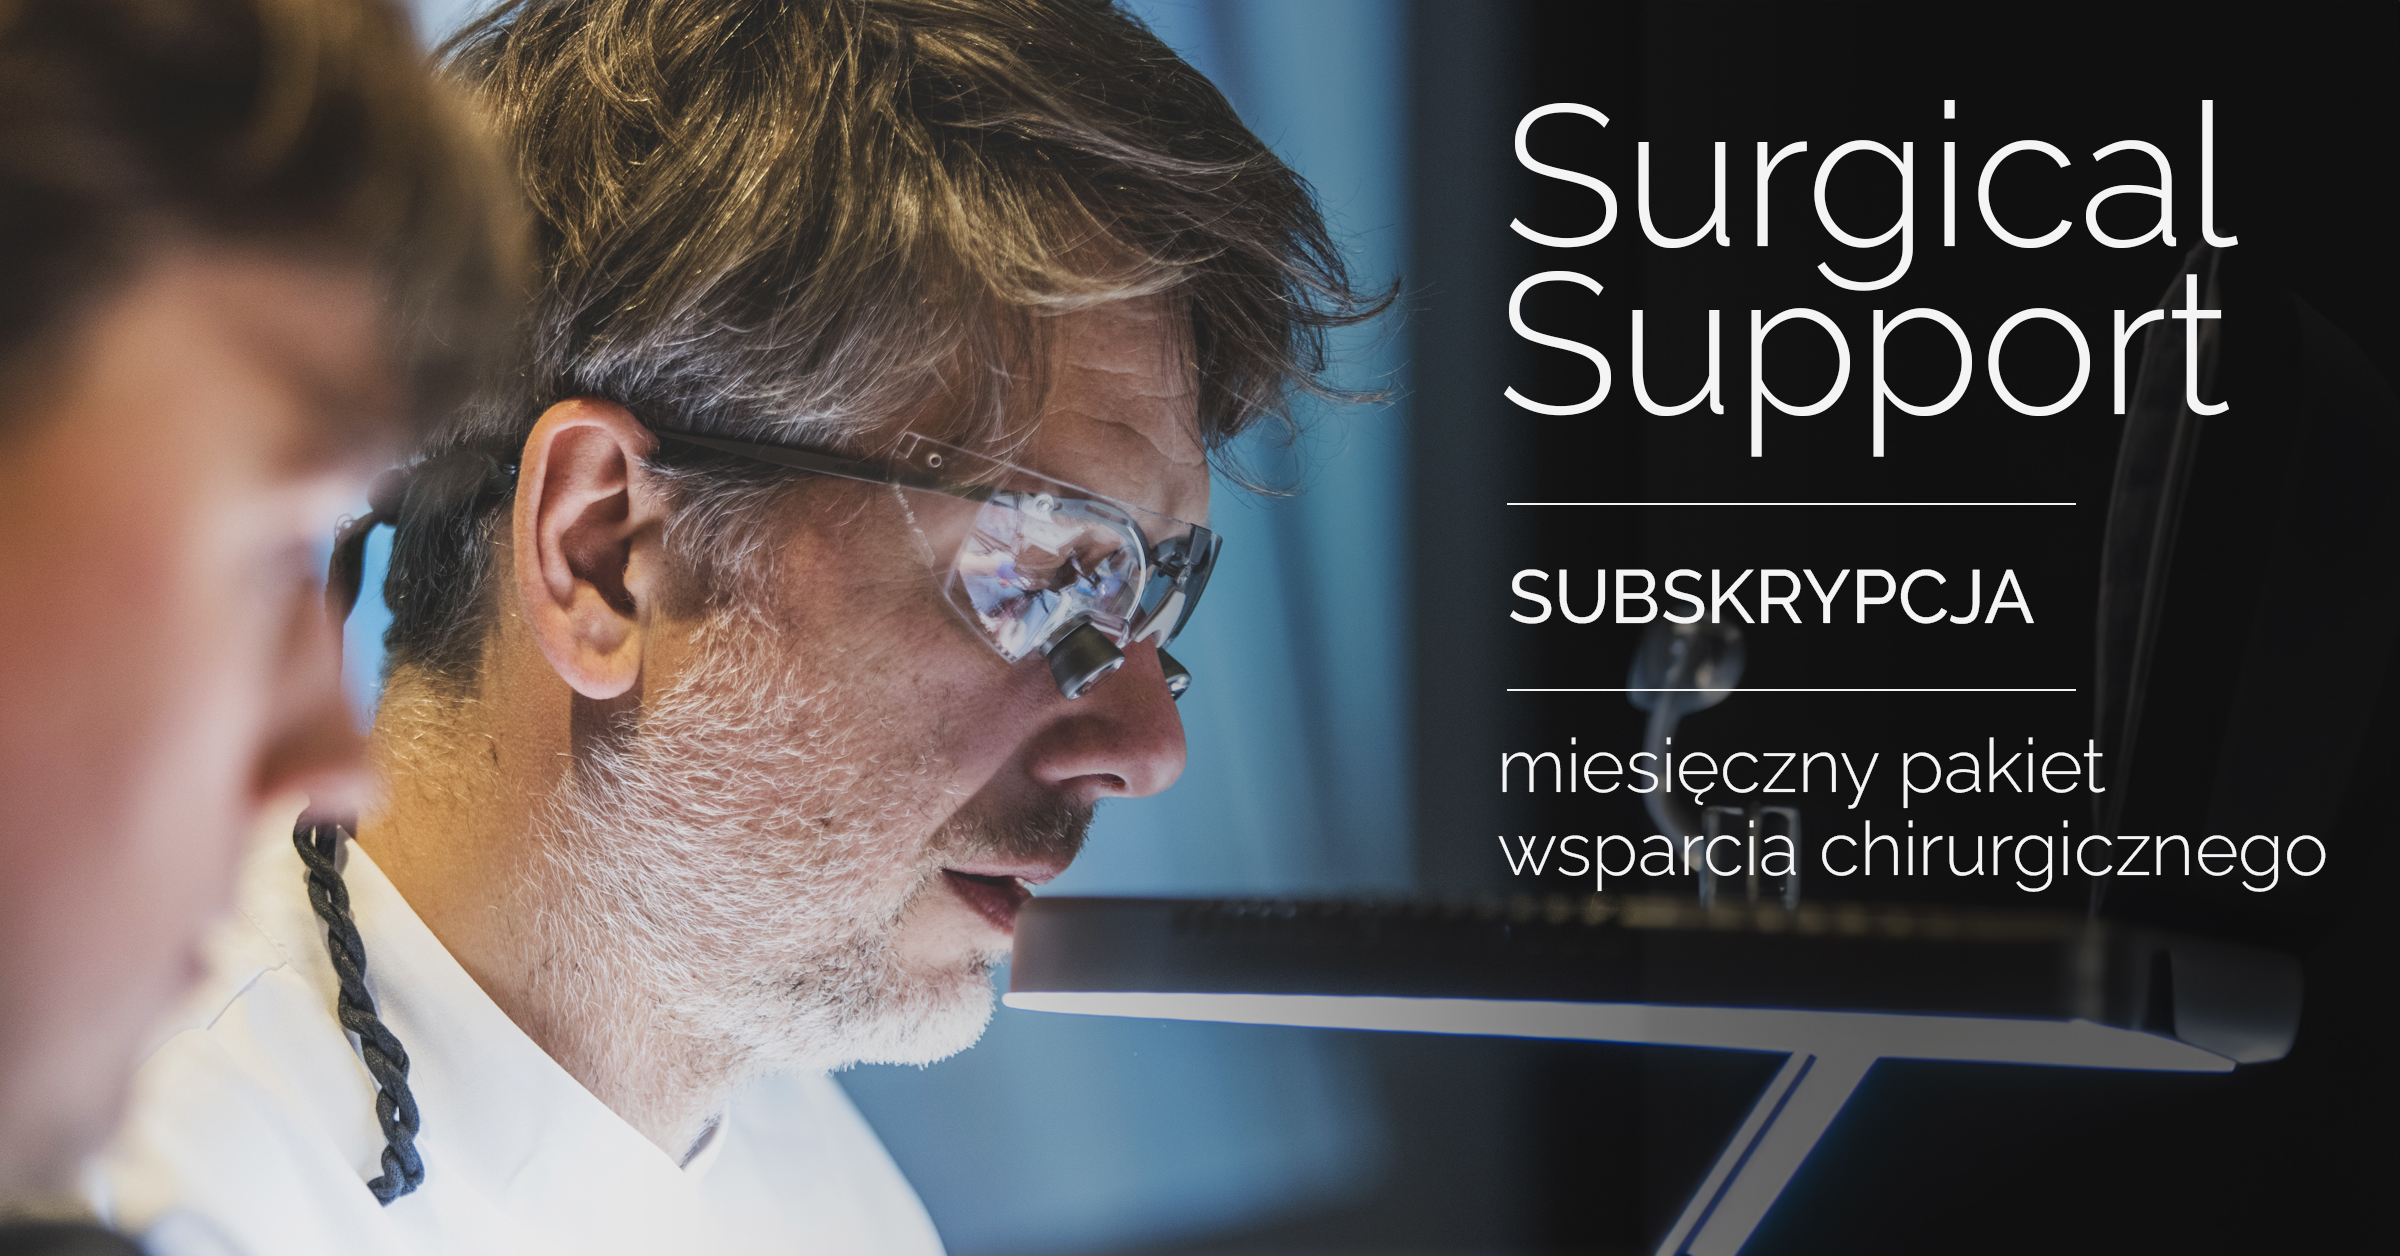 Surgical support - miesięczny pakiet wsparcia chirurgicznego pakiet podstawowy + 1 konsultacja w miesiącu